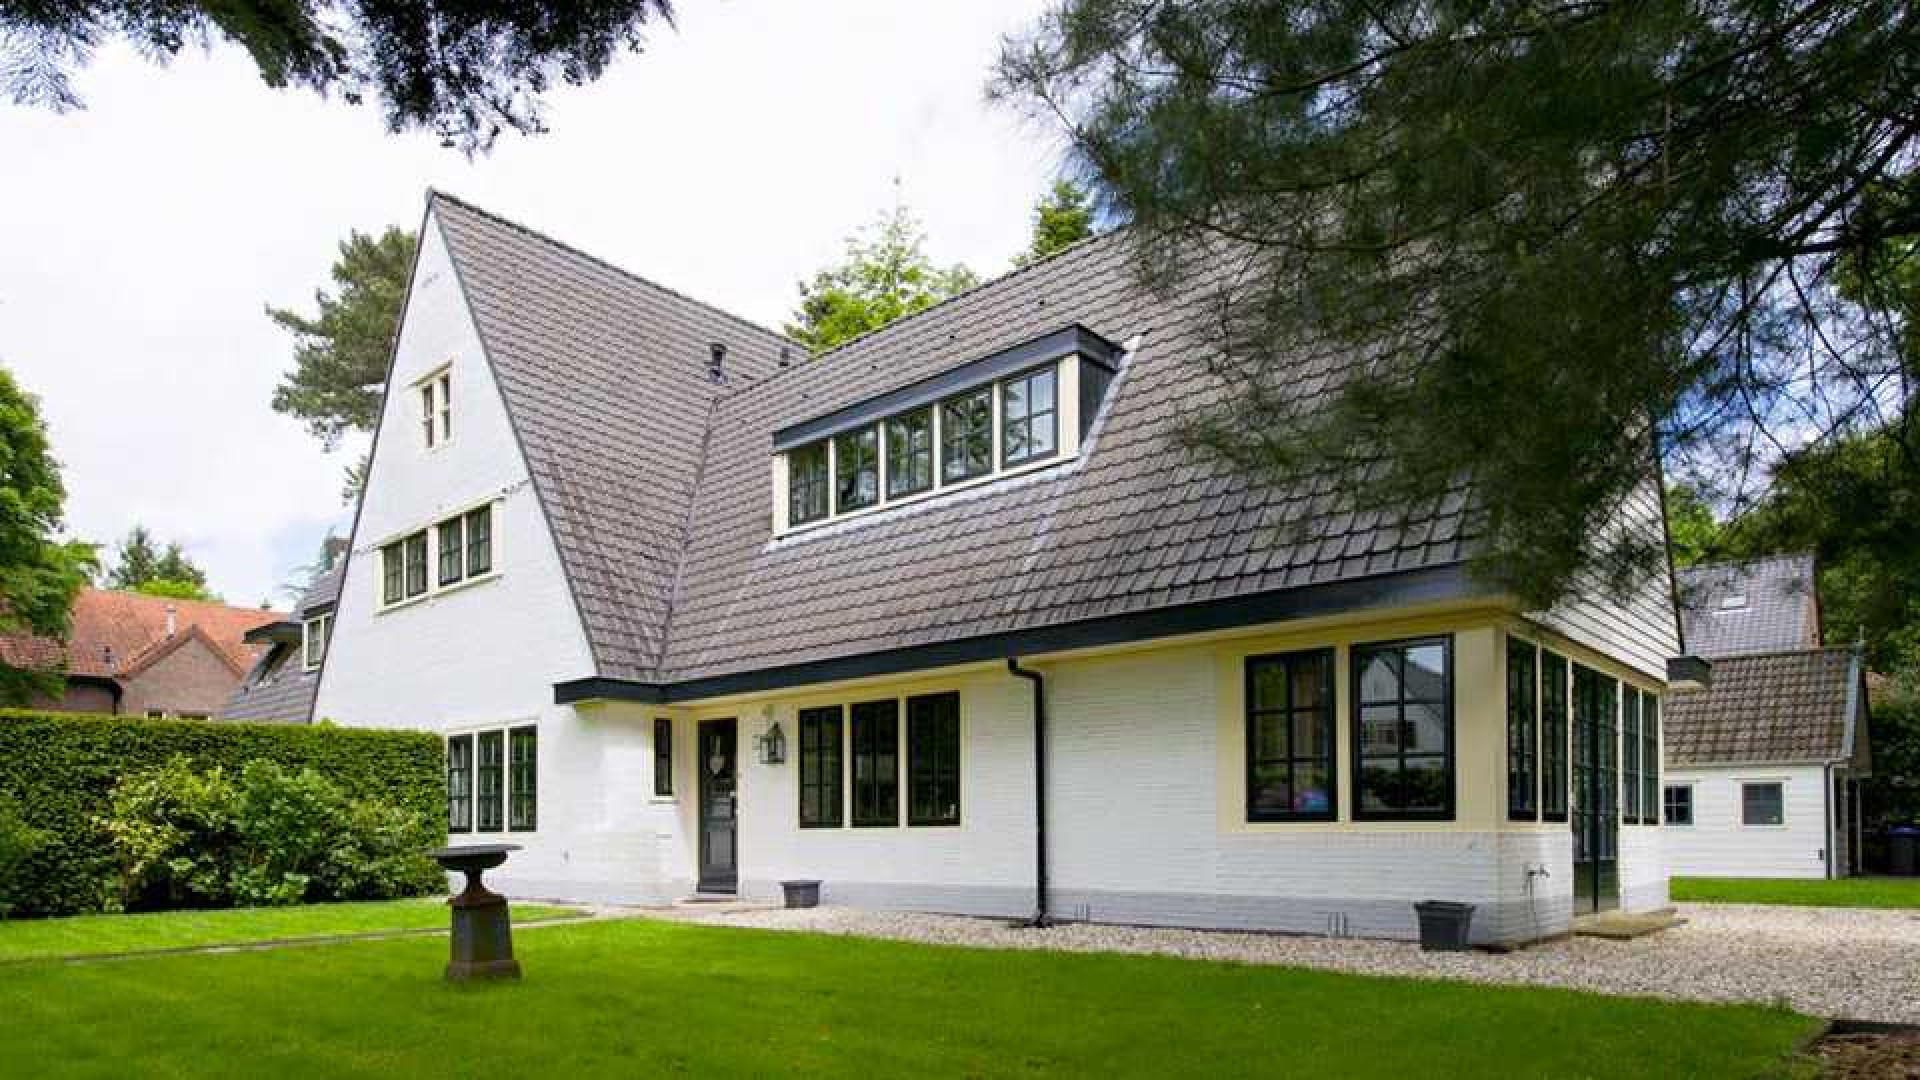 Villa waar Koen Everink werd omgebracht in diepste geheim verkocht. Zie foto's